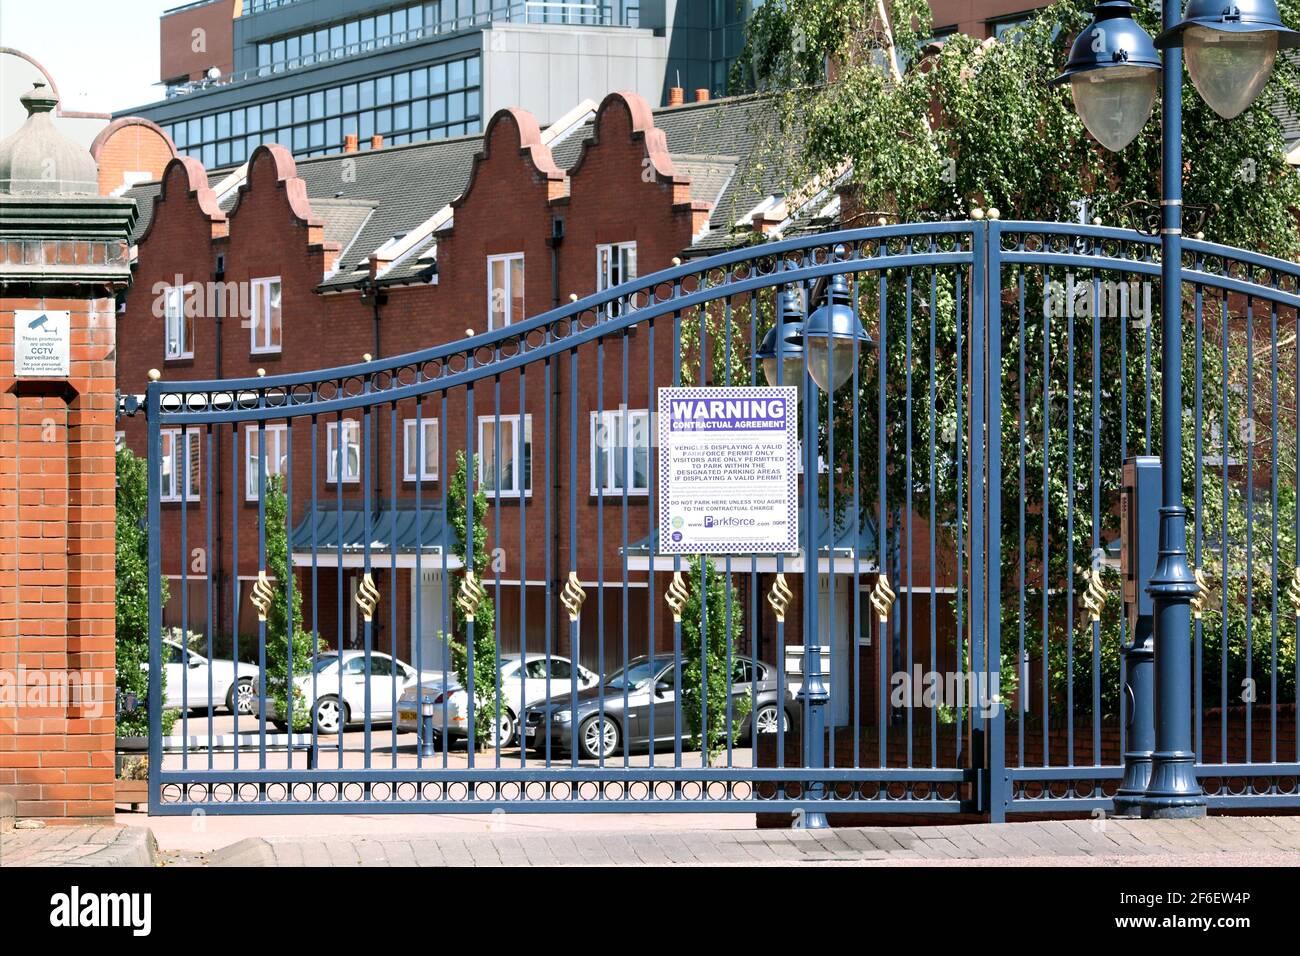 Portes de sécurité à l'entrée de Symphony court, Birmingham, une communauté fermée de nouvelles maisons et appartements près du centre-ville. Banque D'Images